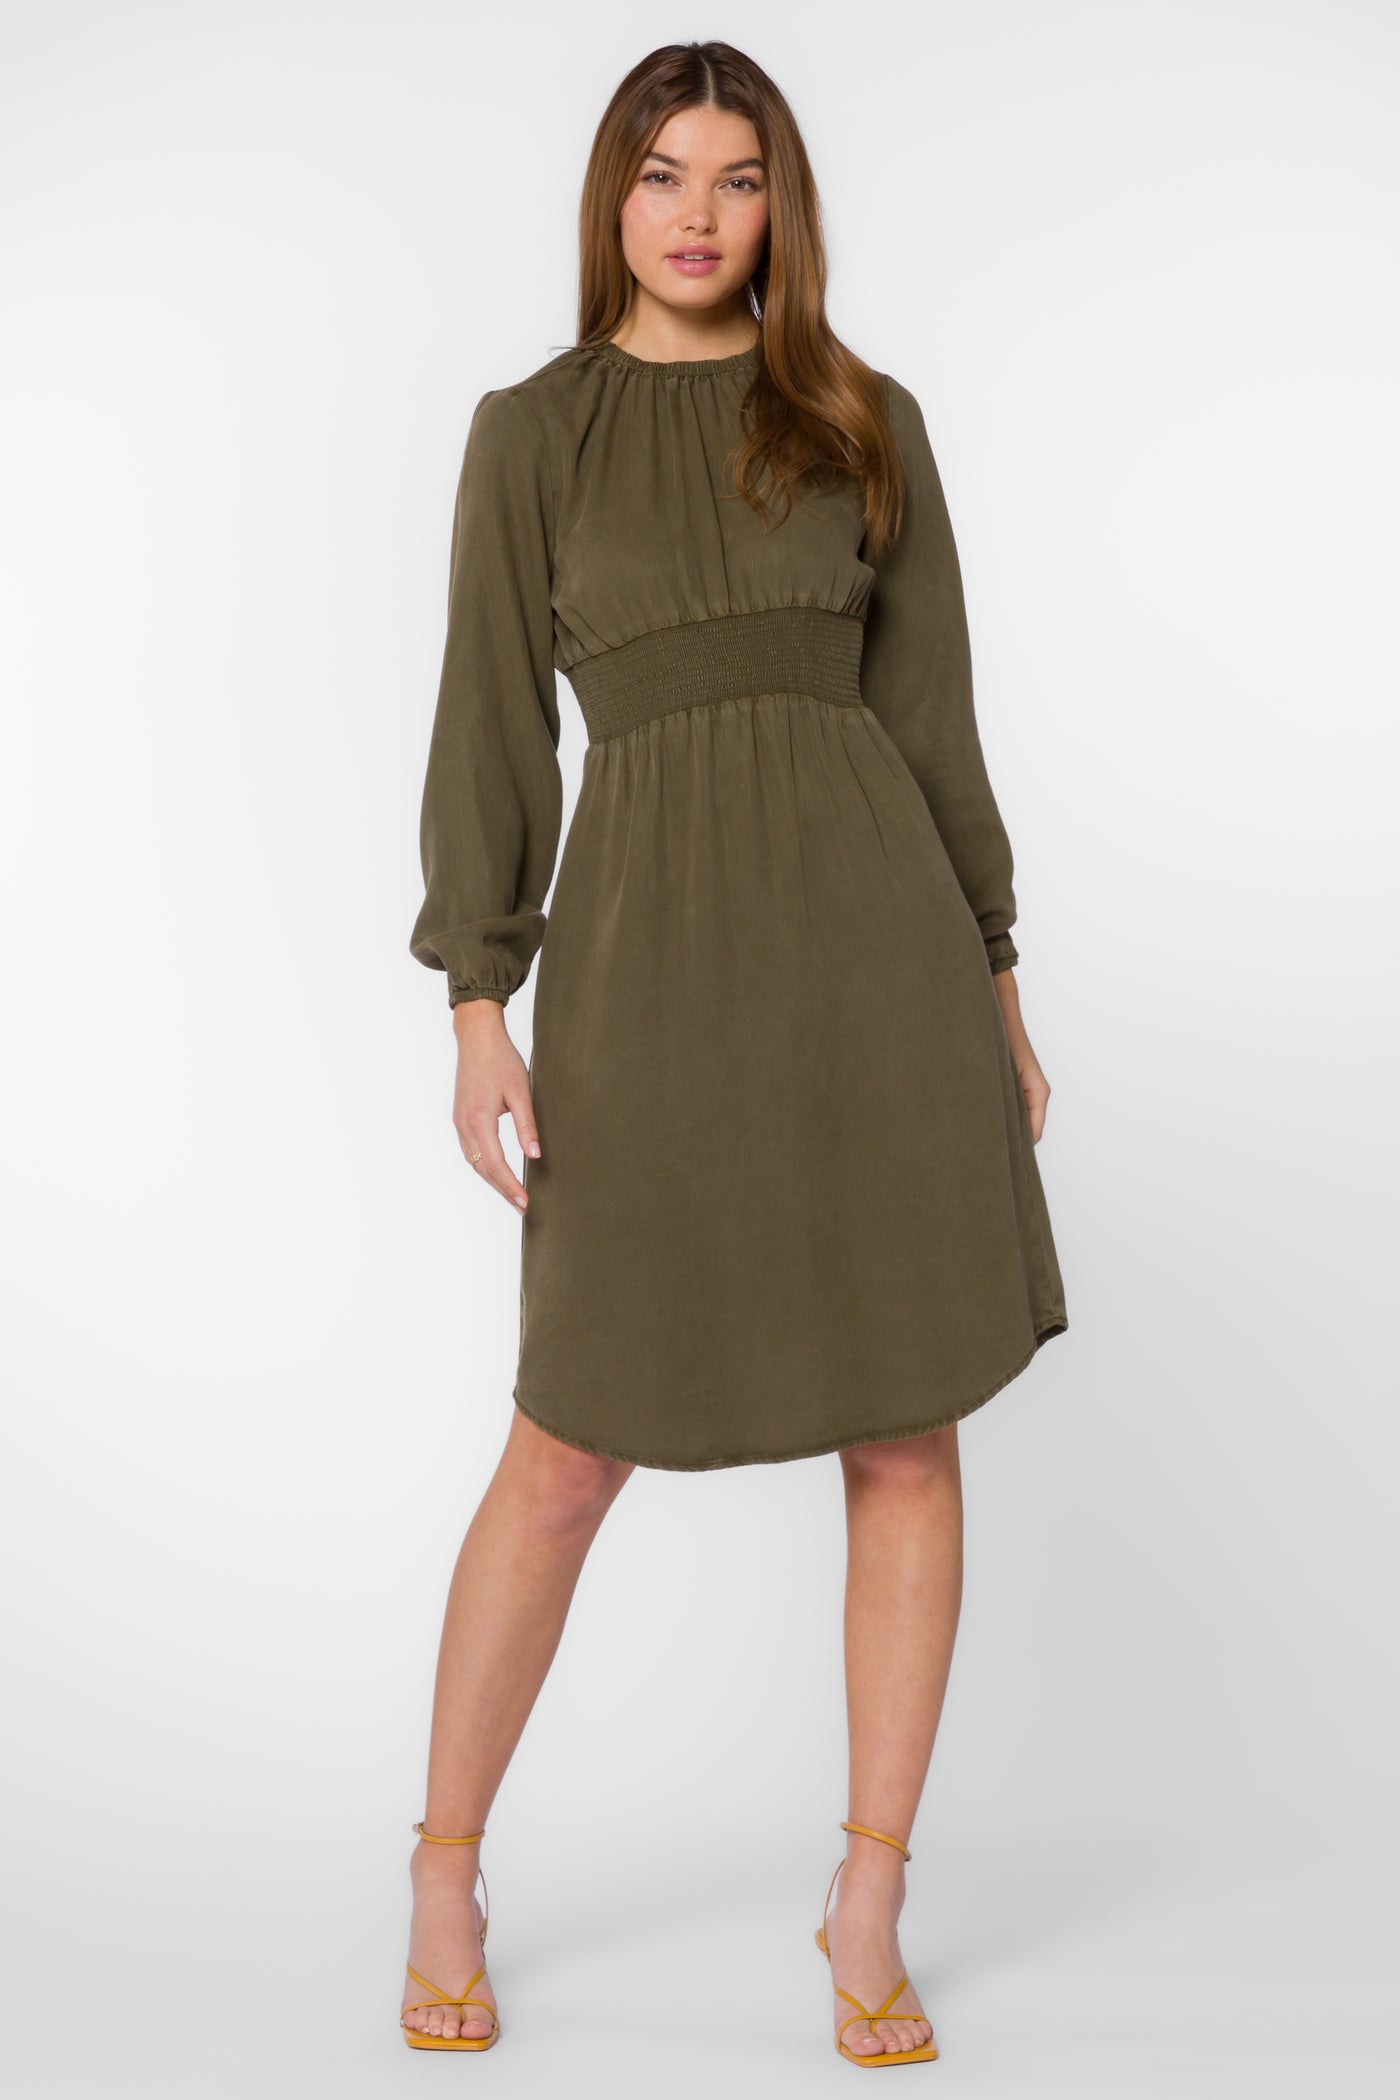 Clarita Olive Dress - Dresses - Velvet Heart Clothing